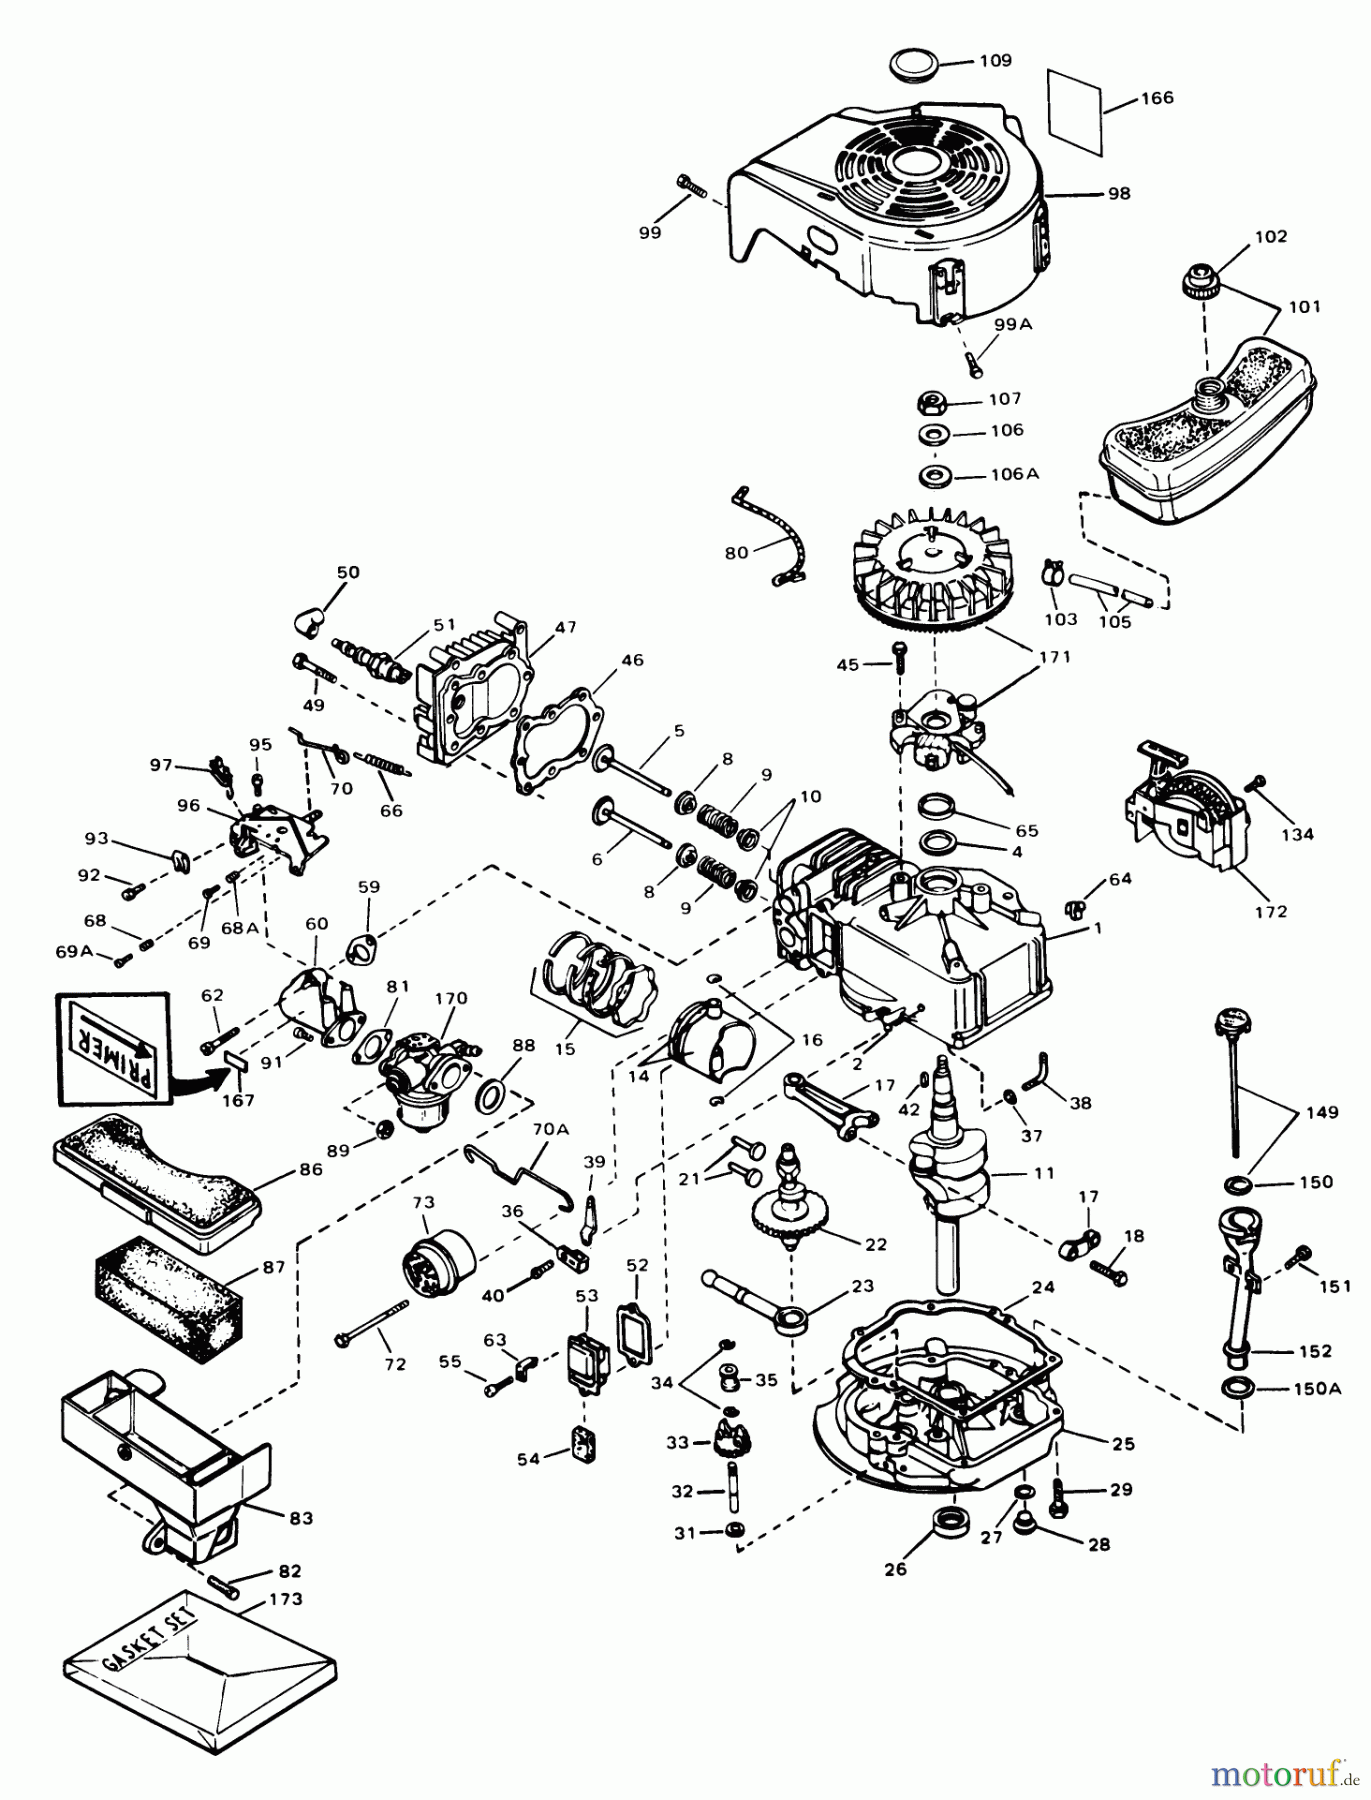  Toro Neu Mowers, Walk-Behind Seite 1 18017 - Toro Lawnmower, 1978 (8000001-8999999) ENGINE TECUMSEH MODEL TVS 90-43007